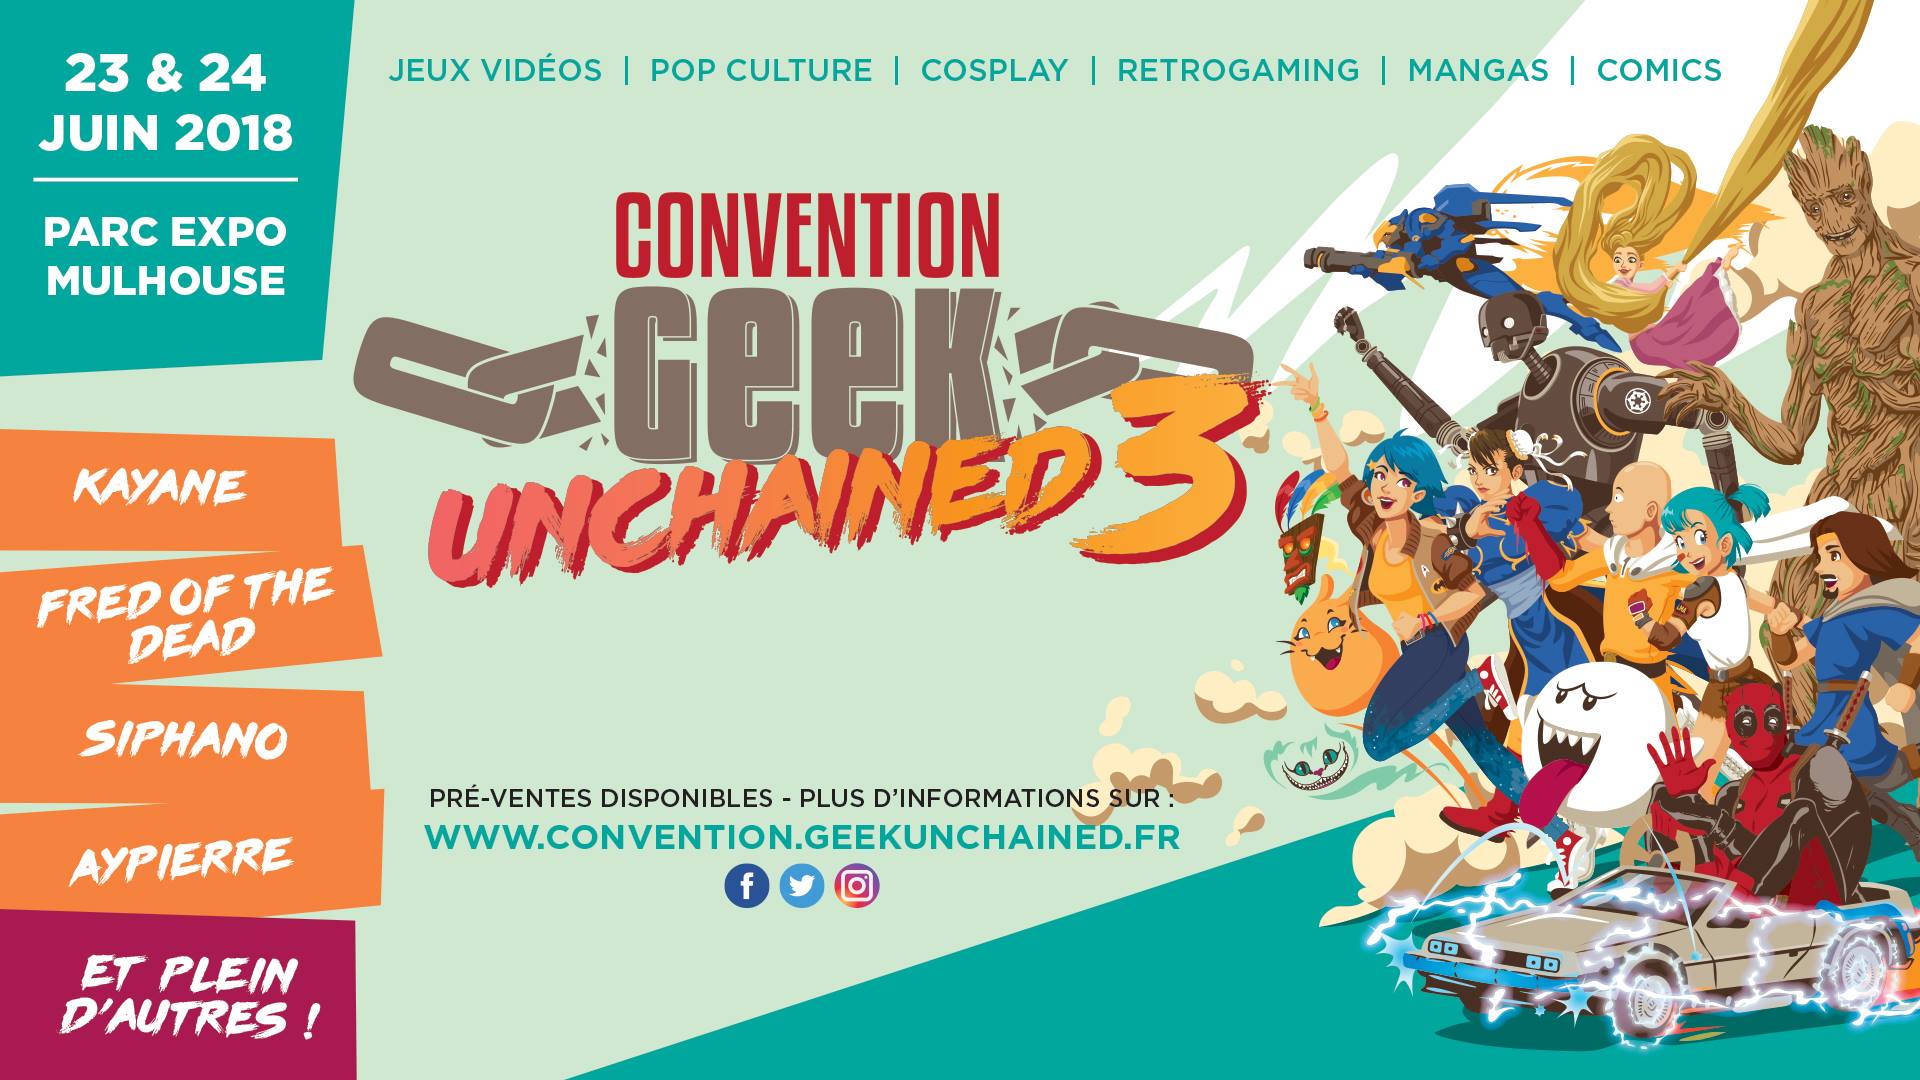 [ÉVÉNEMENT] Convention Geek Unchained 3